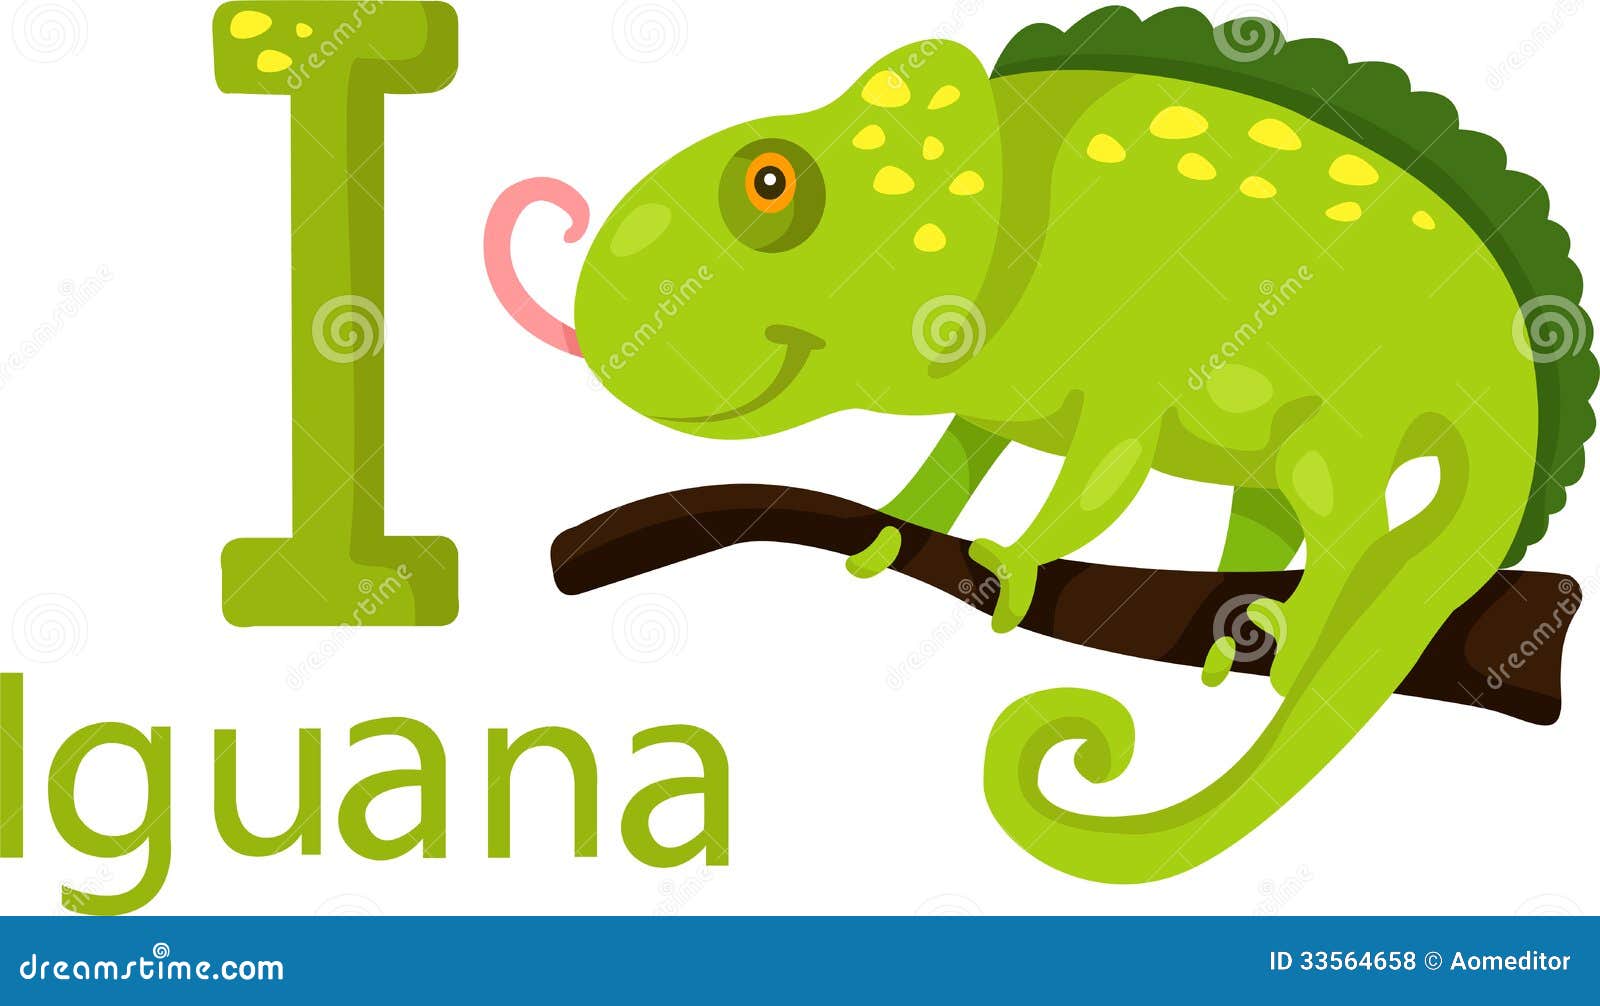 animated iguana clipart - photo #44